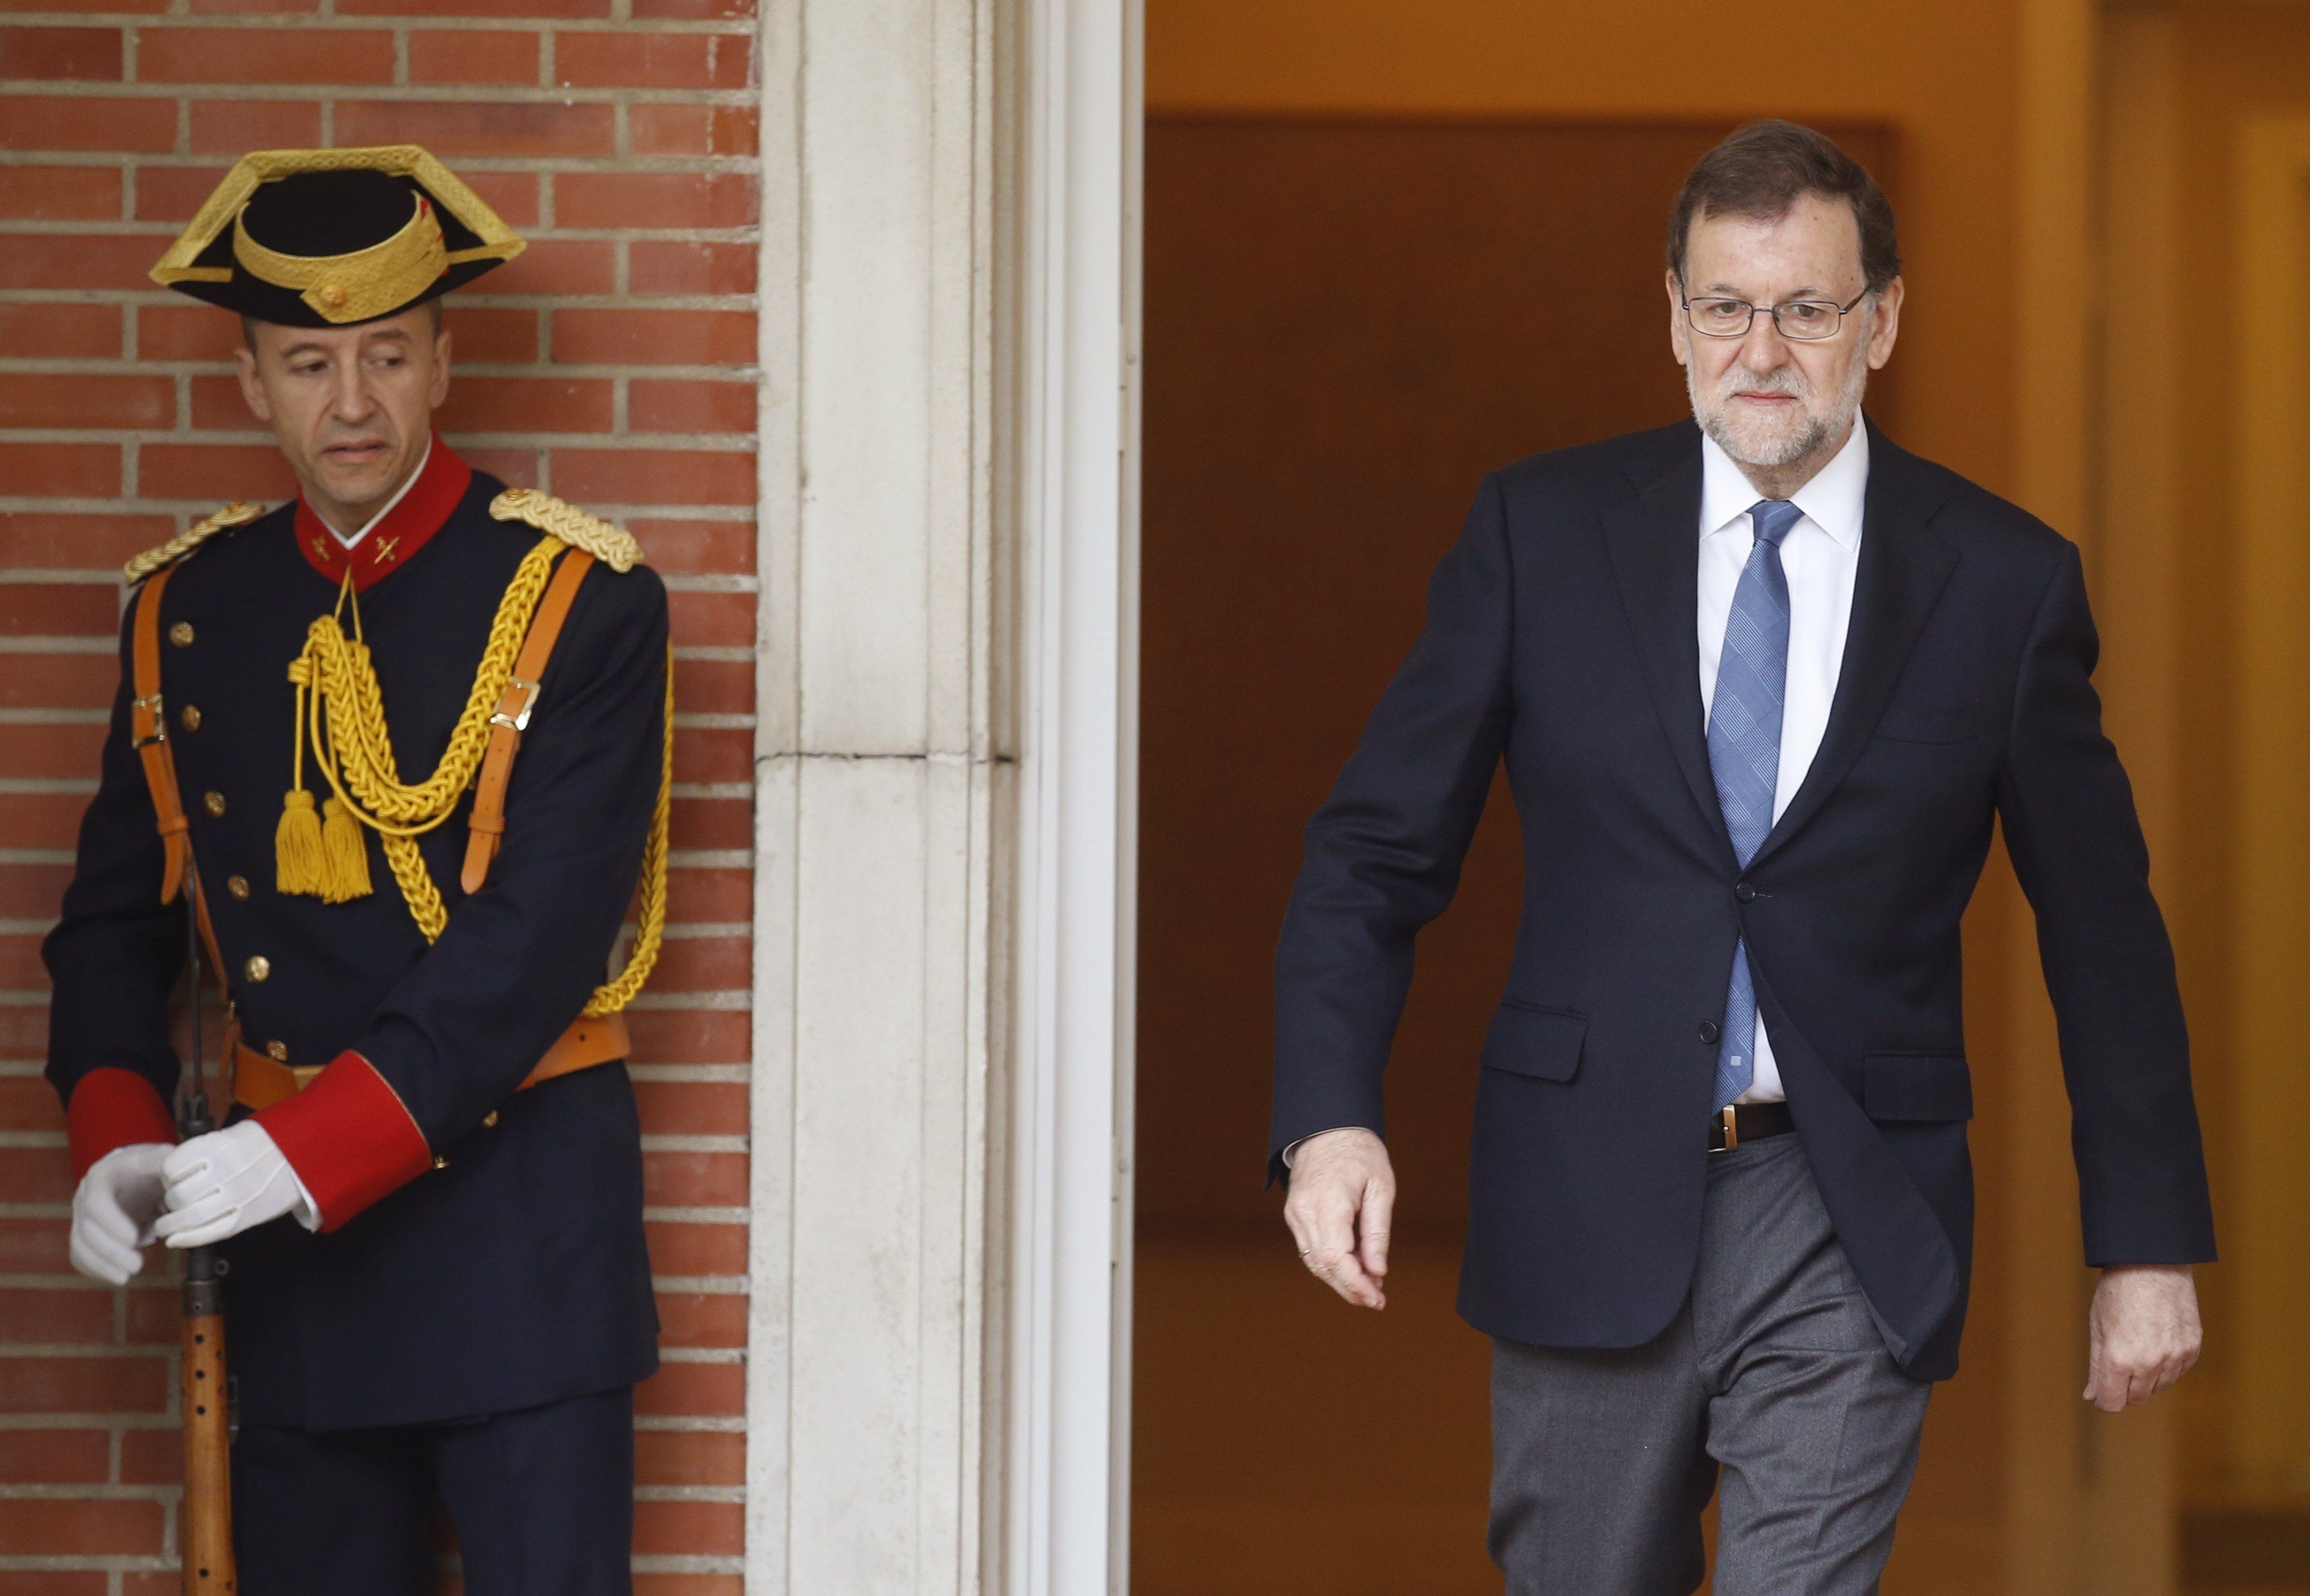 El plan B de Rajoy: empujar al PSOE a la abstención, para gobernar